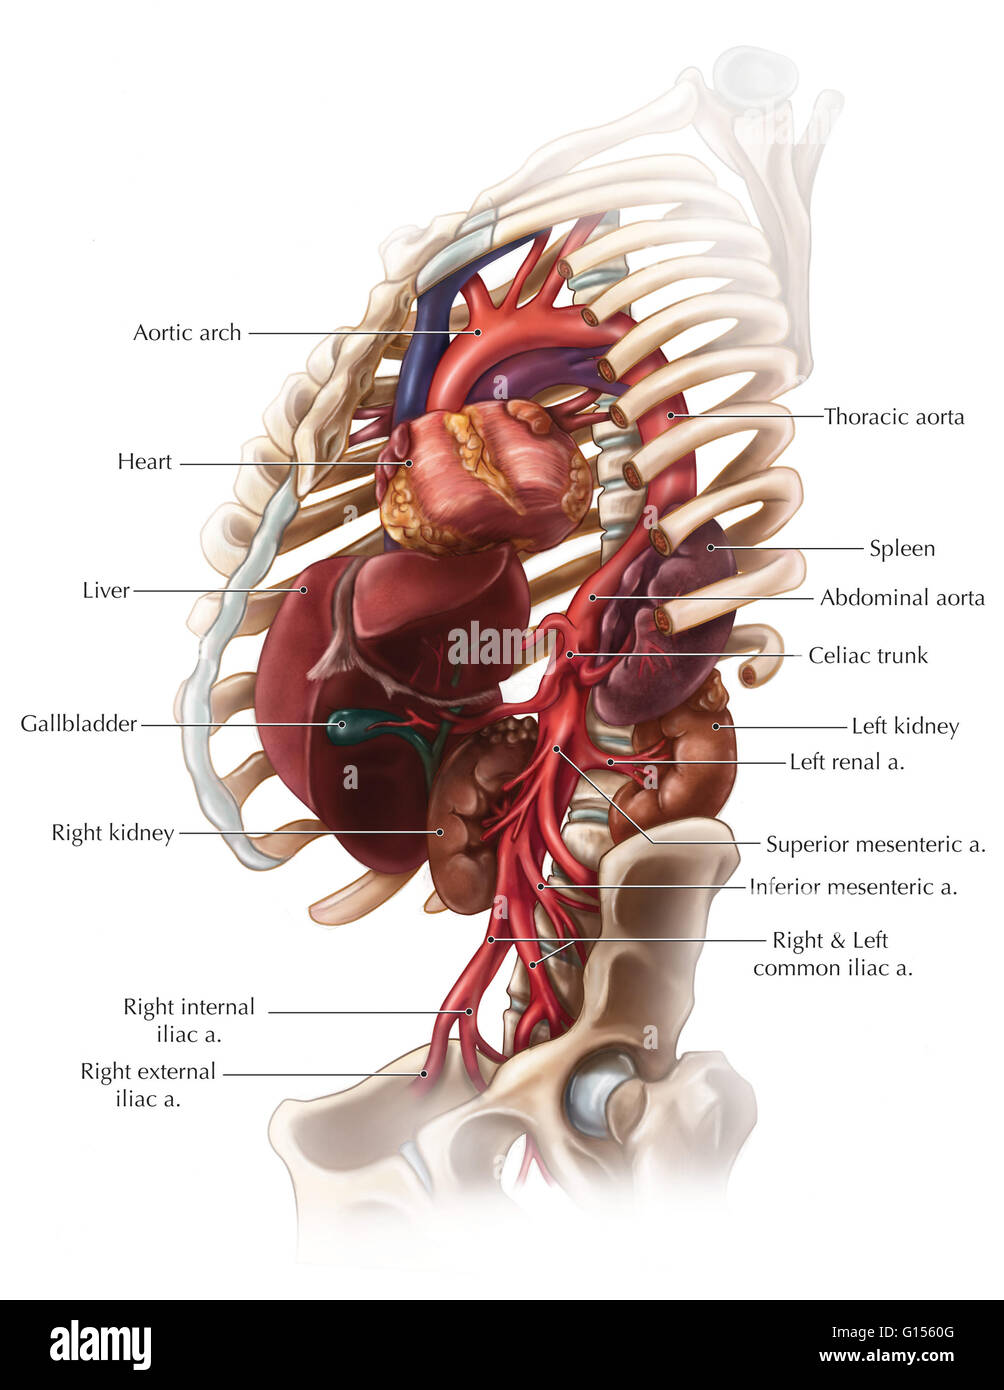 Une vue de l'aorte abdominale et les différentes directions qui assurent la prestation de sang pour les principaux organes dans l'abdomen. Le celic trunk branches dans la politique commune de l'insuffisance hépatique, gastrique gauche et artères spléniques, tandis que l'artère mésentérique supérieure et inférieure Banque D'Images